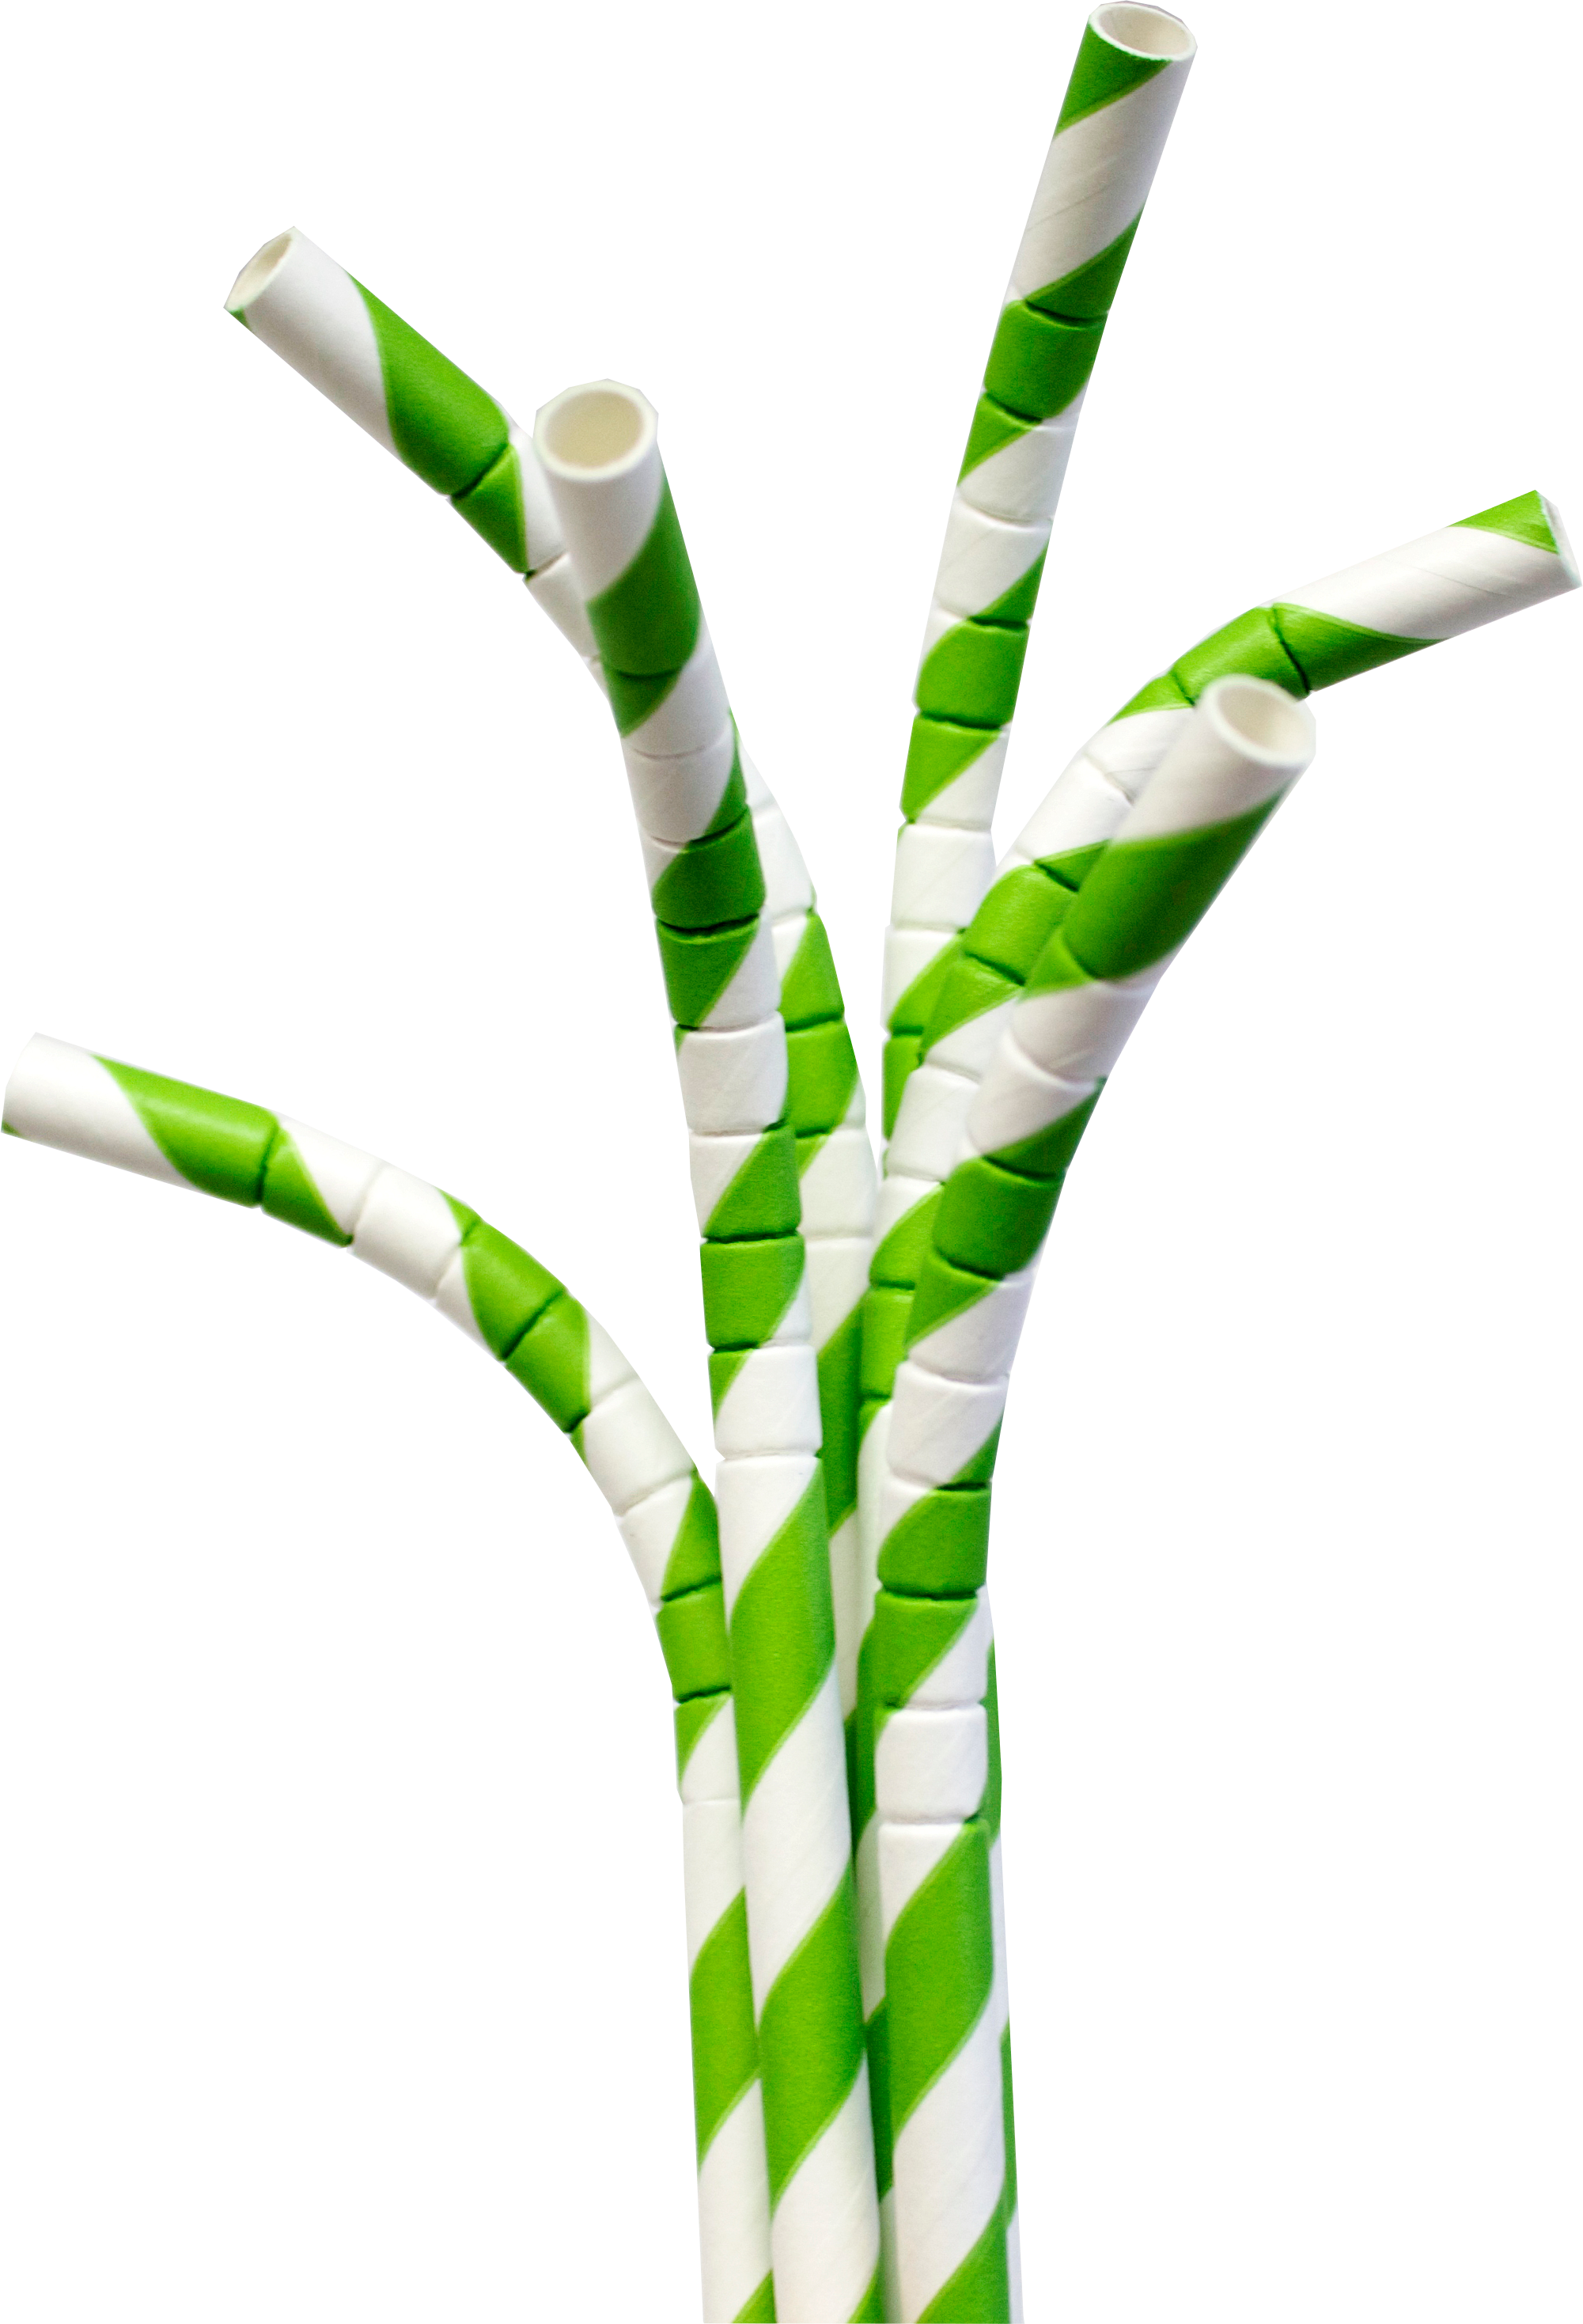 Greenand White Paper Straws